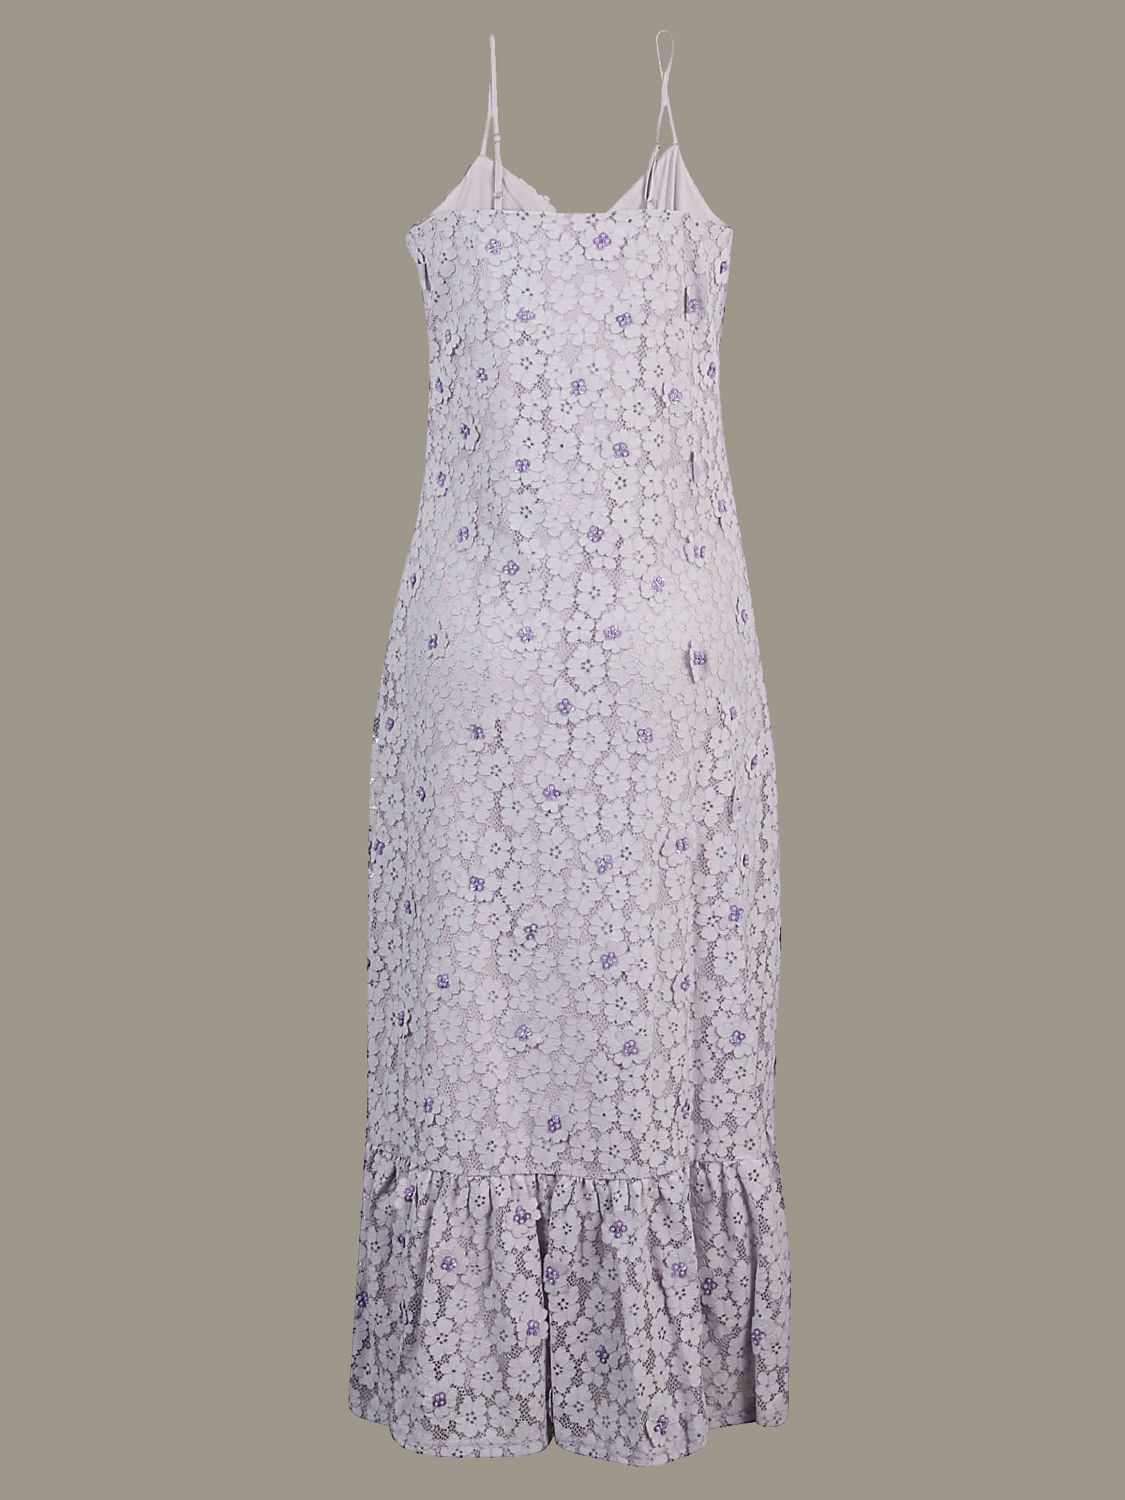 michael kors floral lace dress